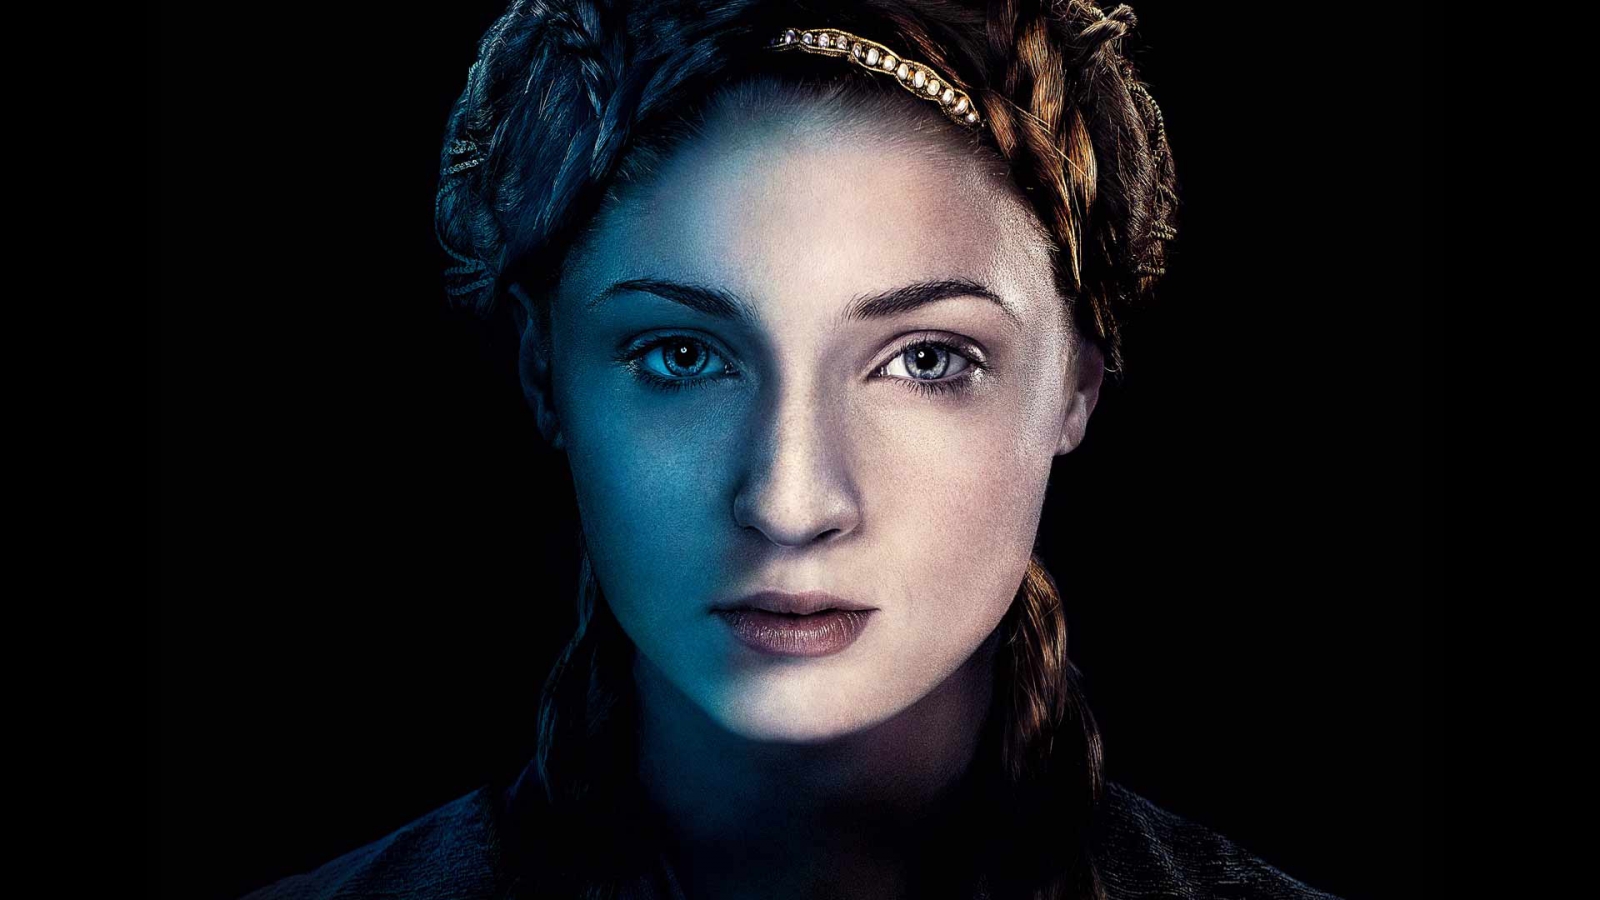 Sansa Stark Game of Thrones for 1600 x 900 HDTV resolution